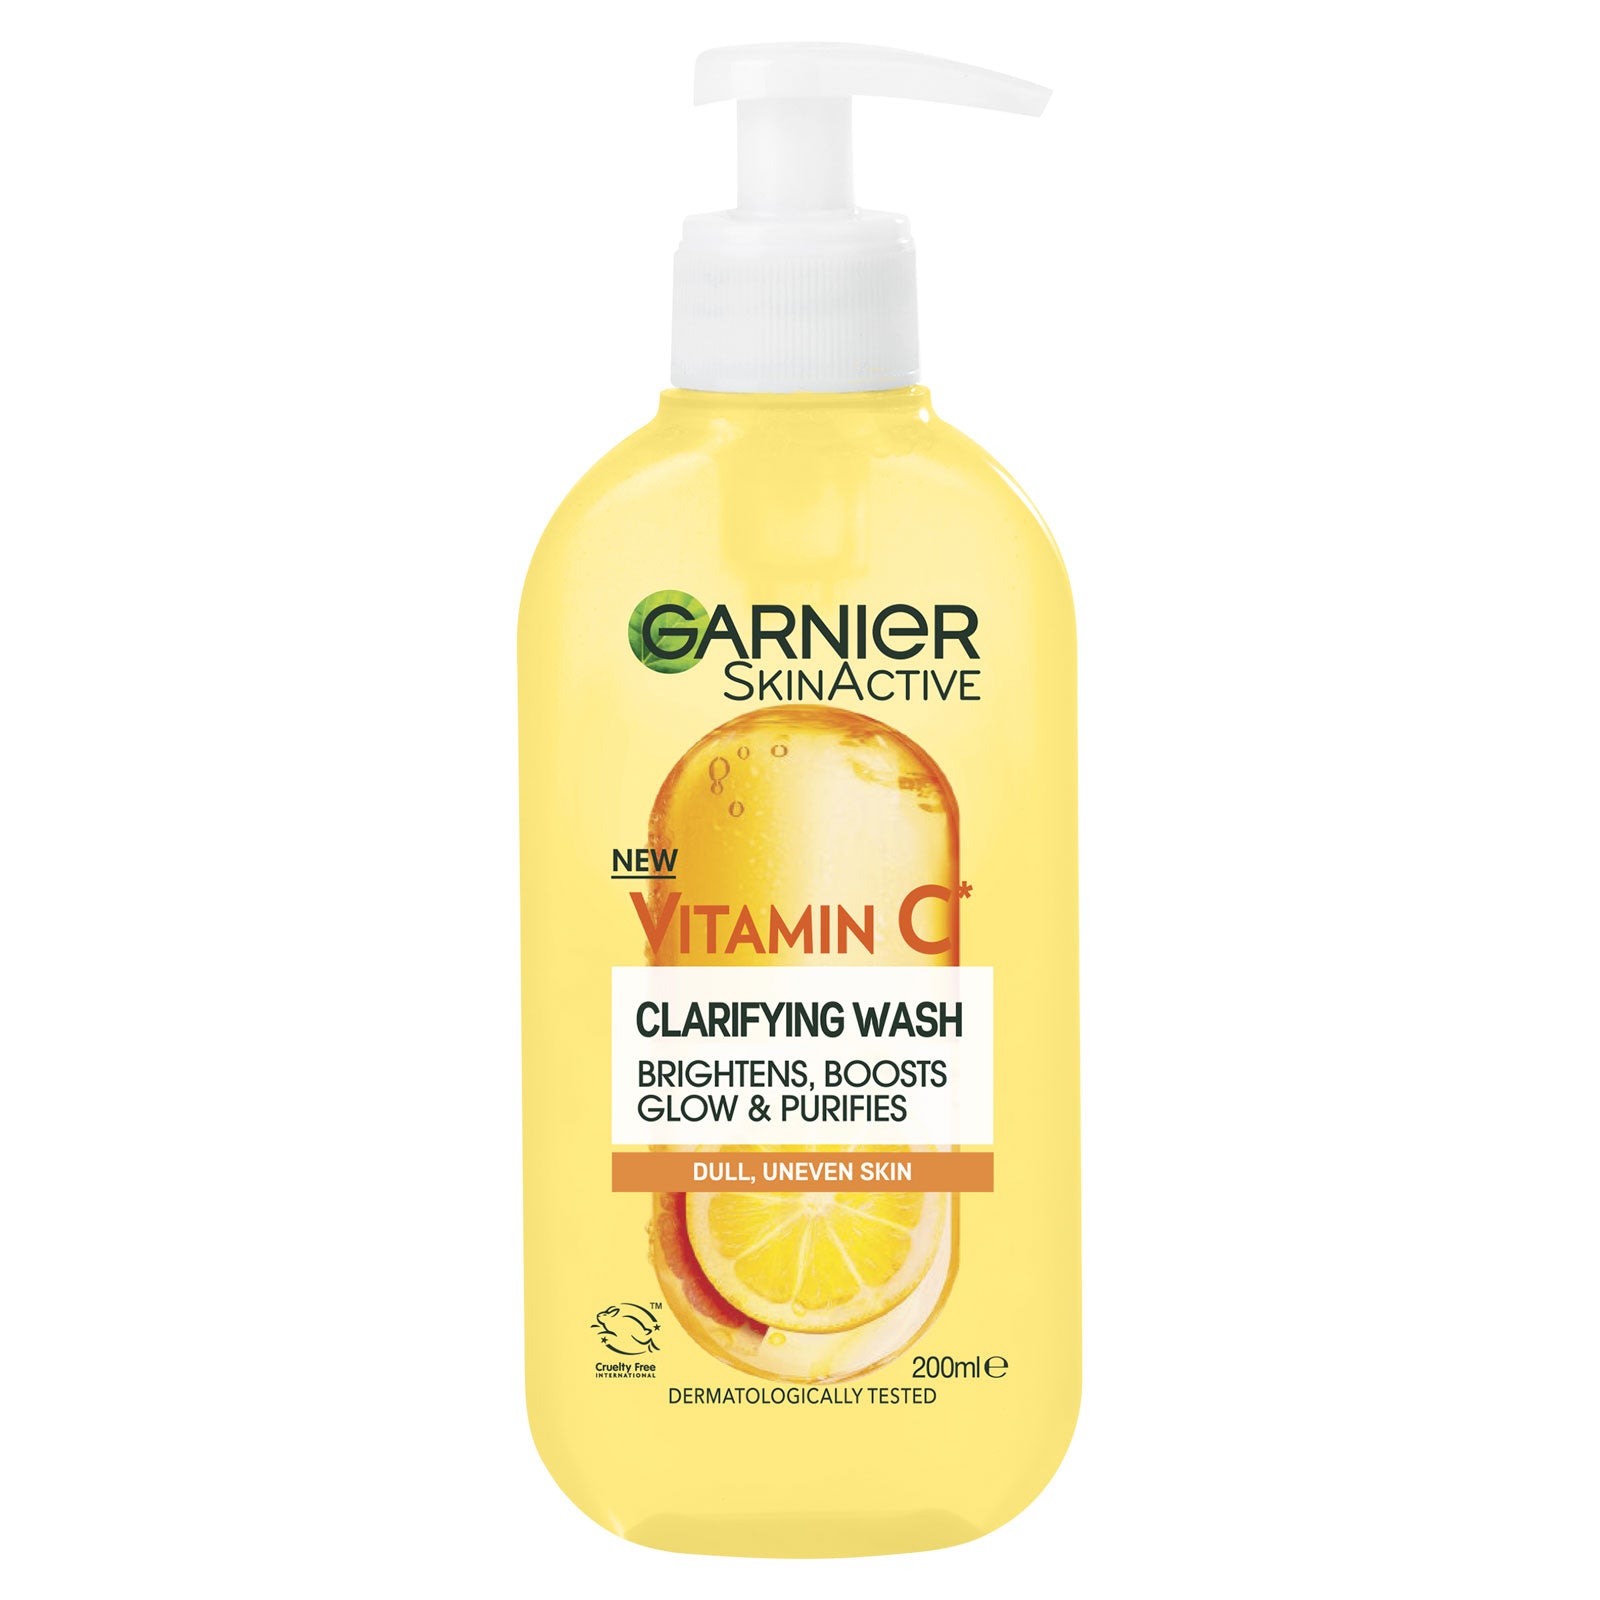 Garnier Skin Active Clarifying Wash Vit C  200ml